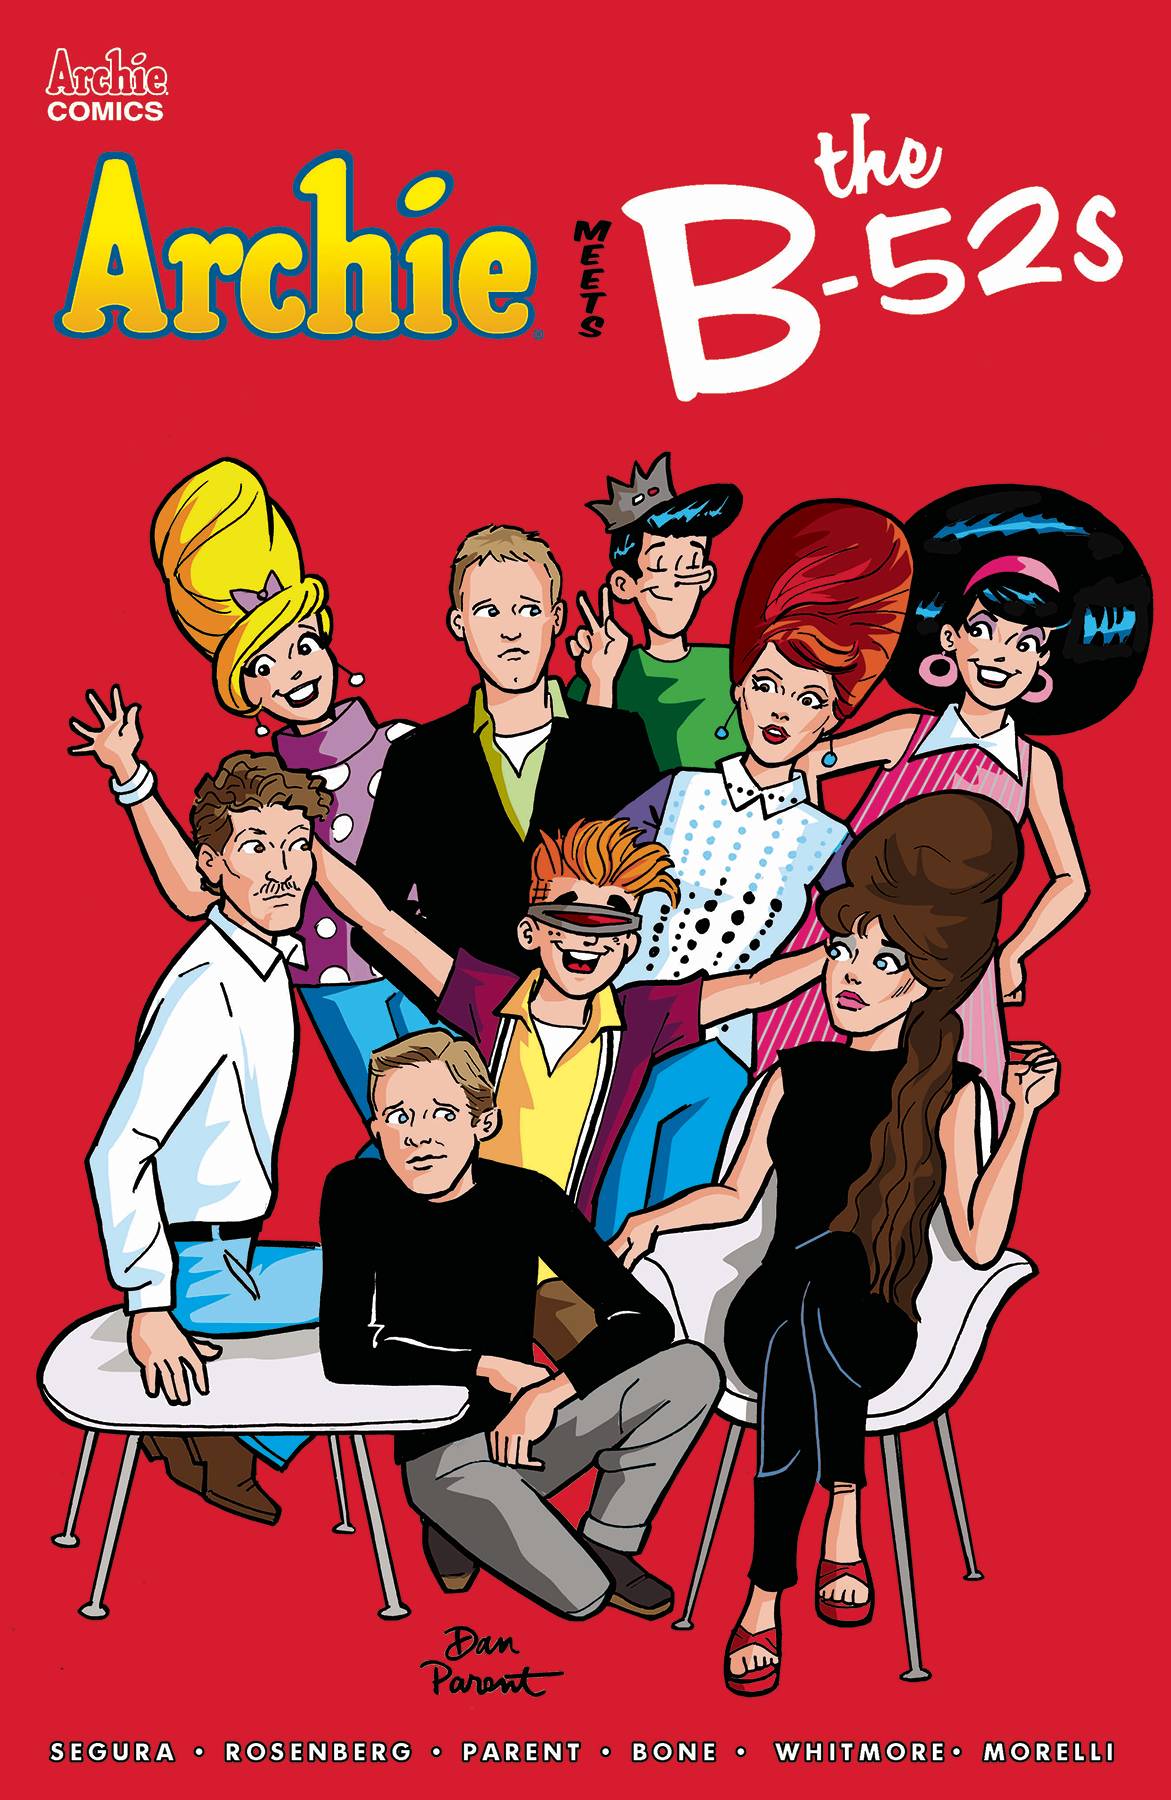 Archie Meets B-52s #1 Cover A Parent